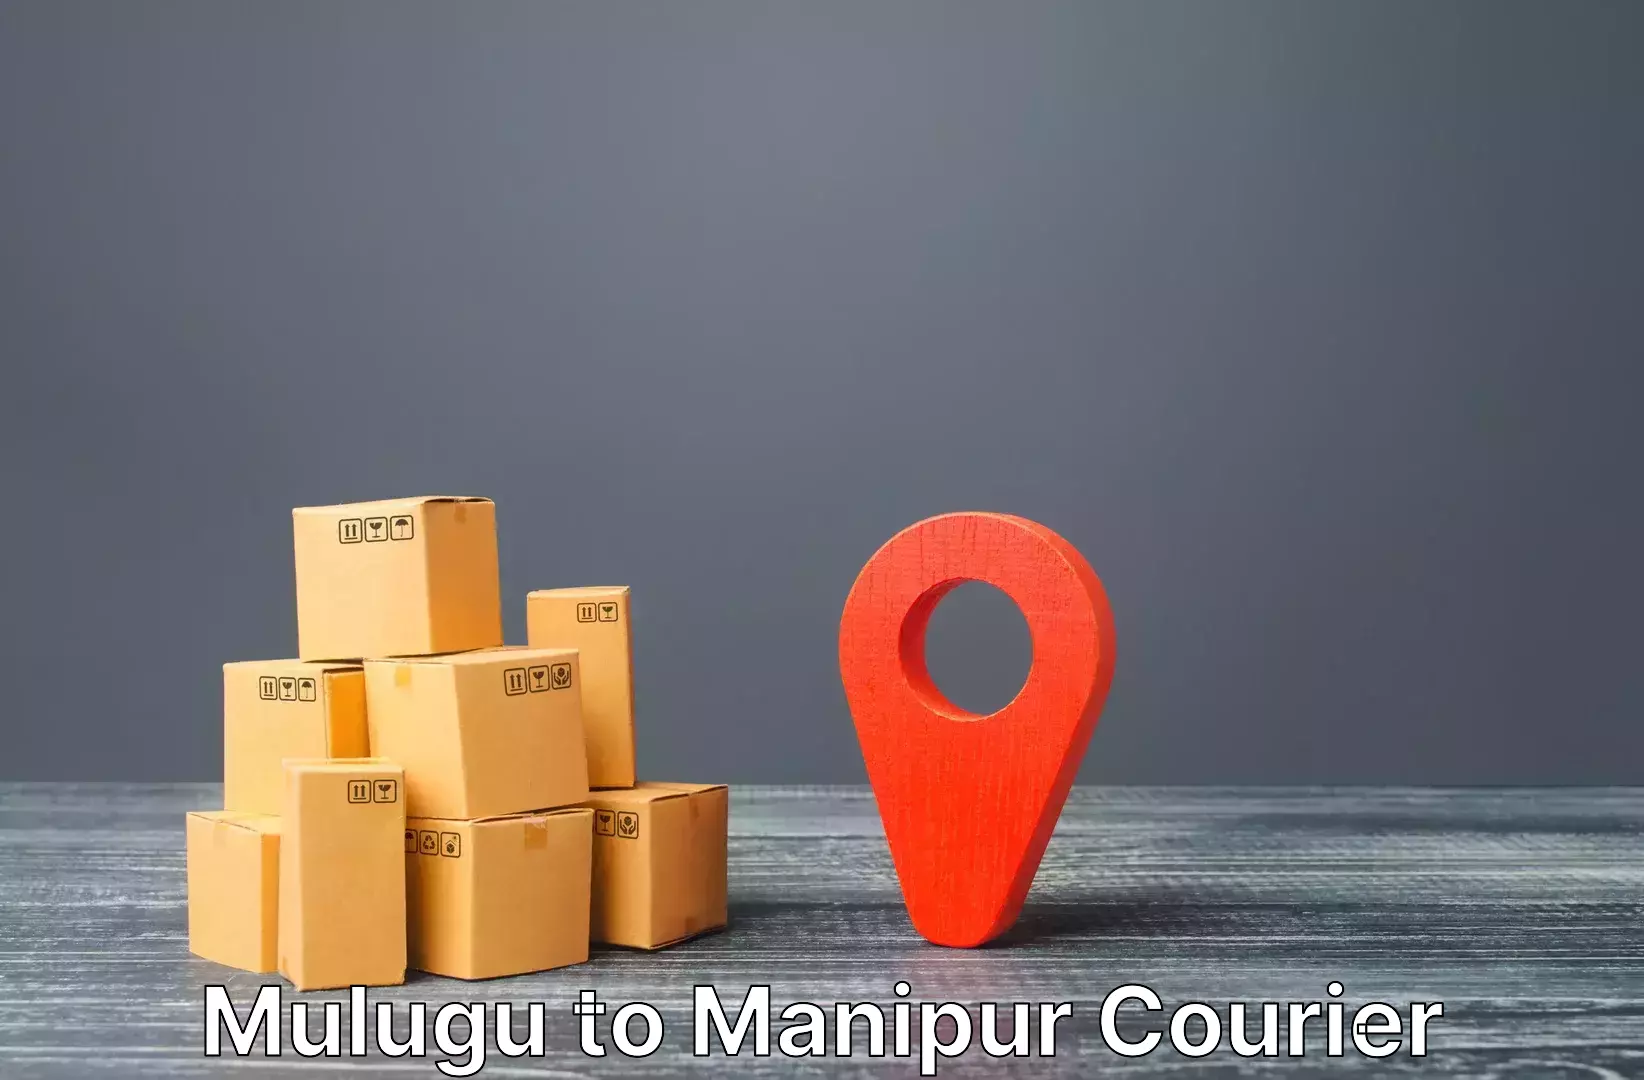 Luggage shipment tracking Mulugu to Thoubal